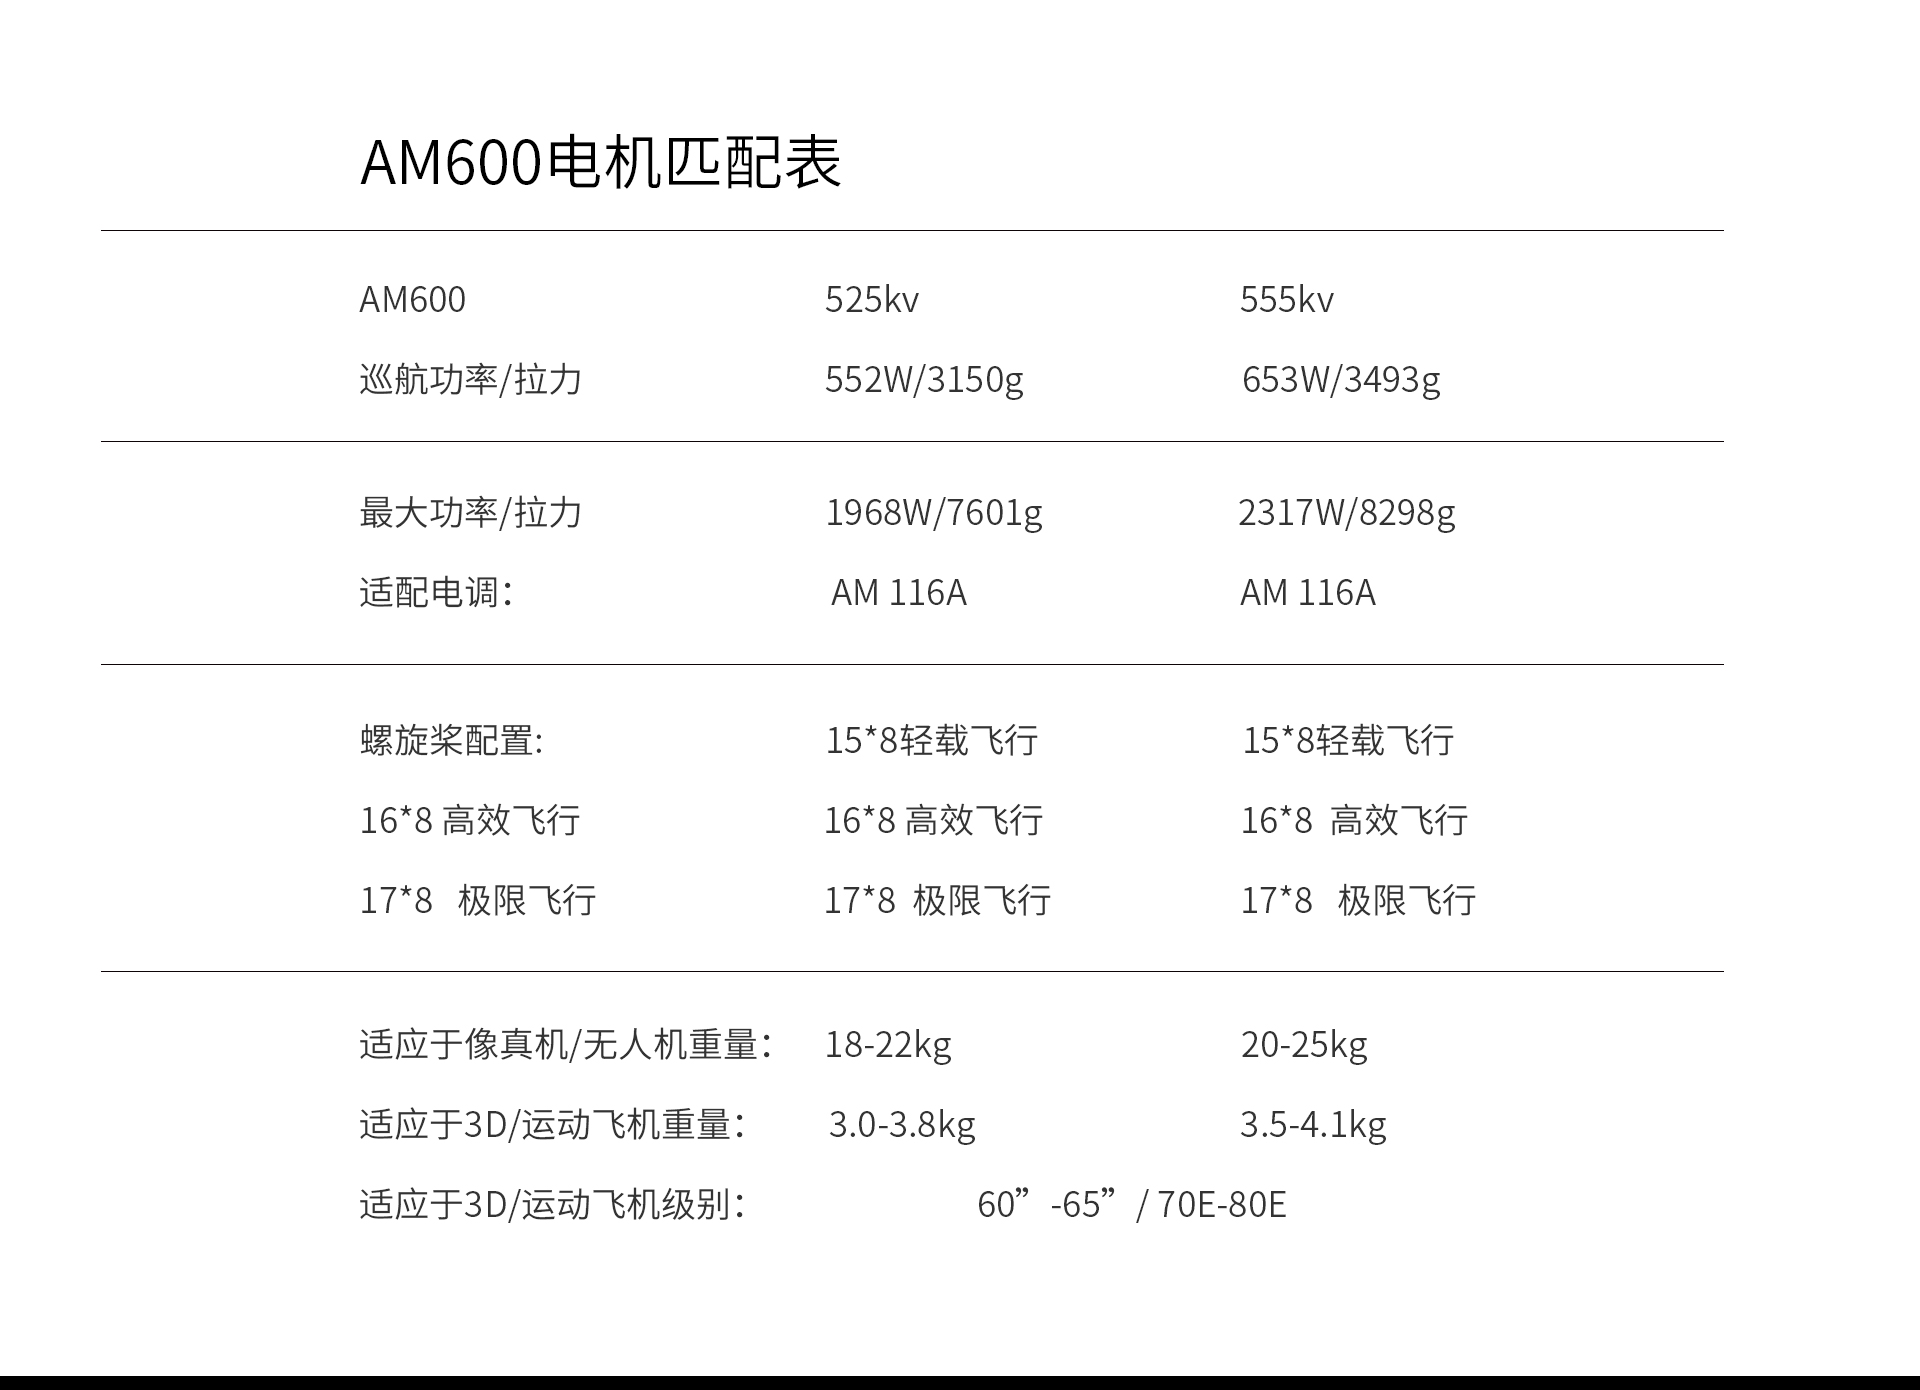 AM600-详情下部分官网中文.jpg